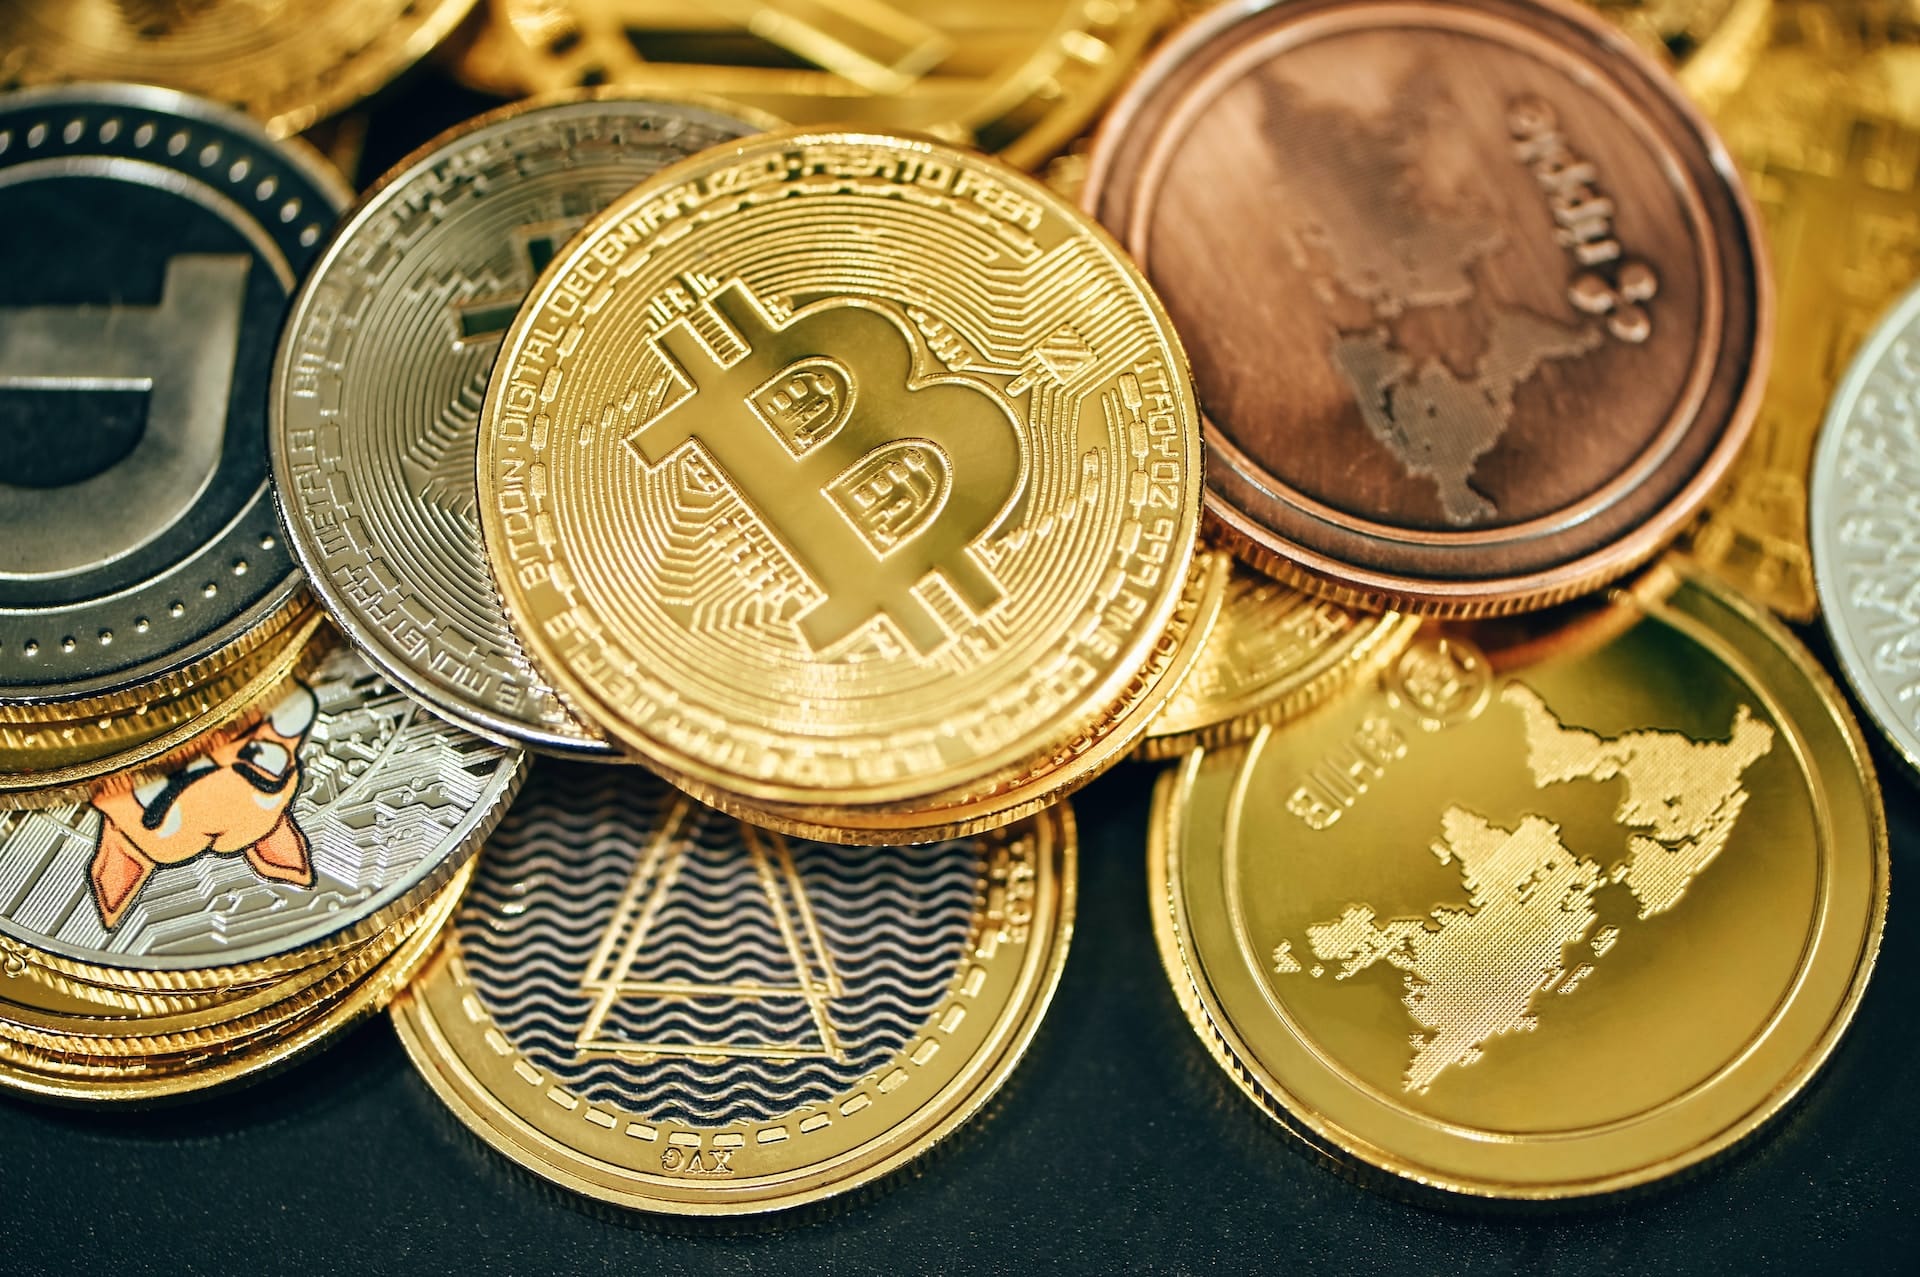 Krypto News: Welche Kryptowährung unter 1 Euro heute kaufen? Die fünf besten Coins - Coincierge.de | Bitcoin-Blog